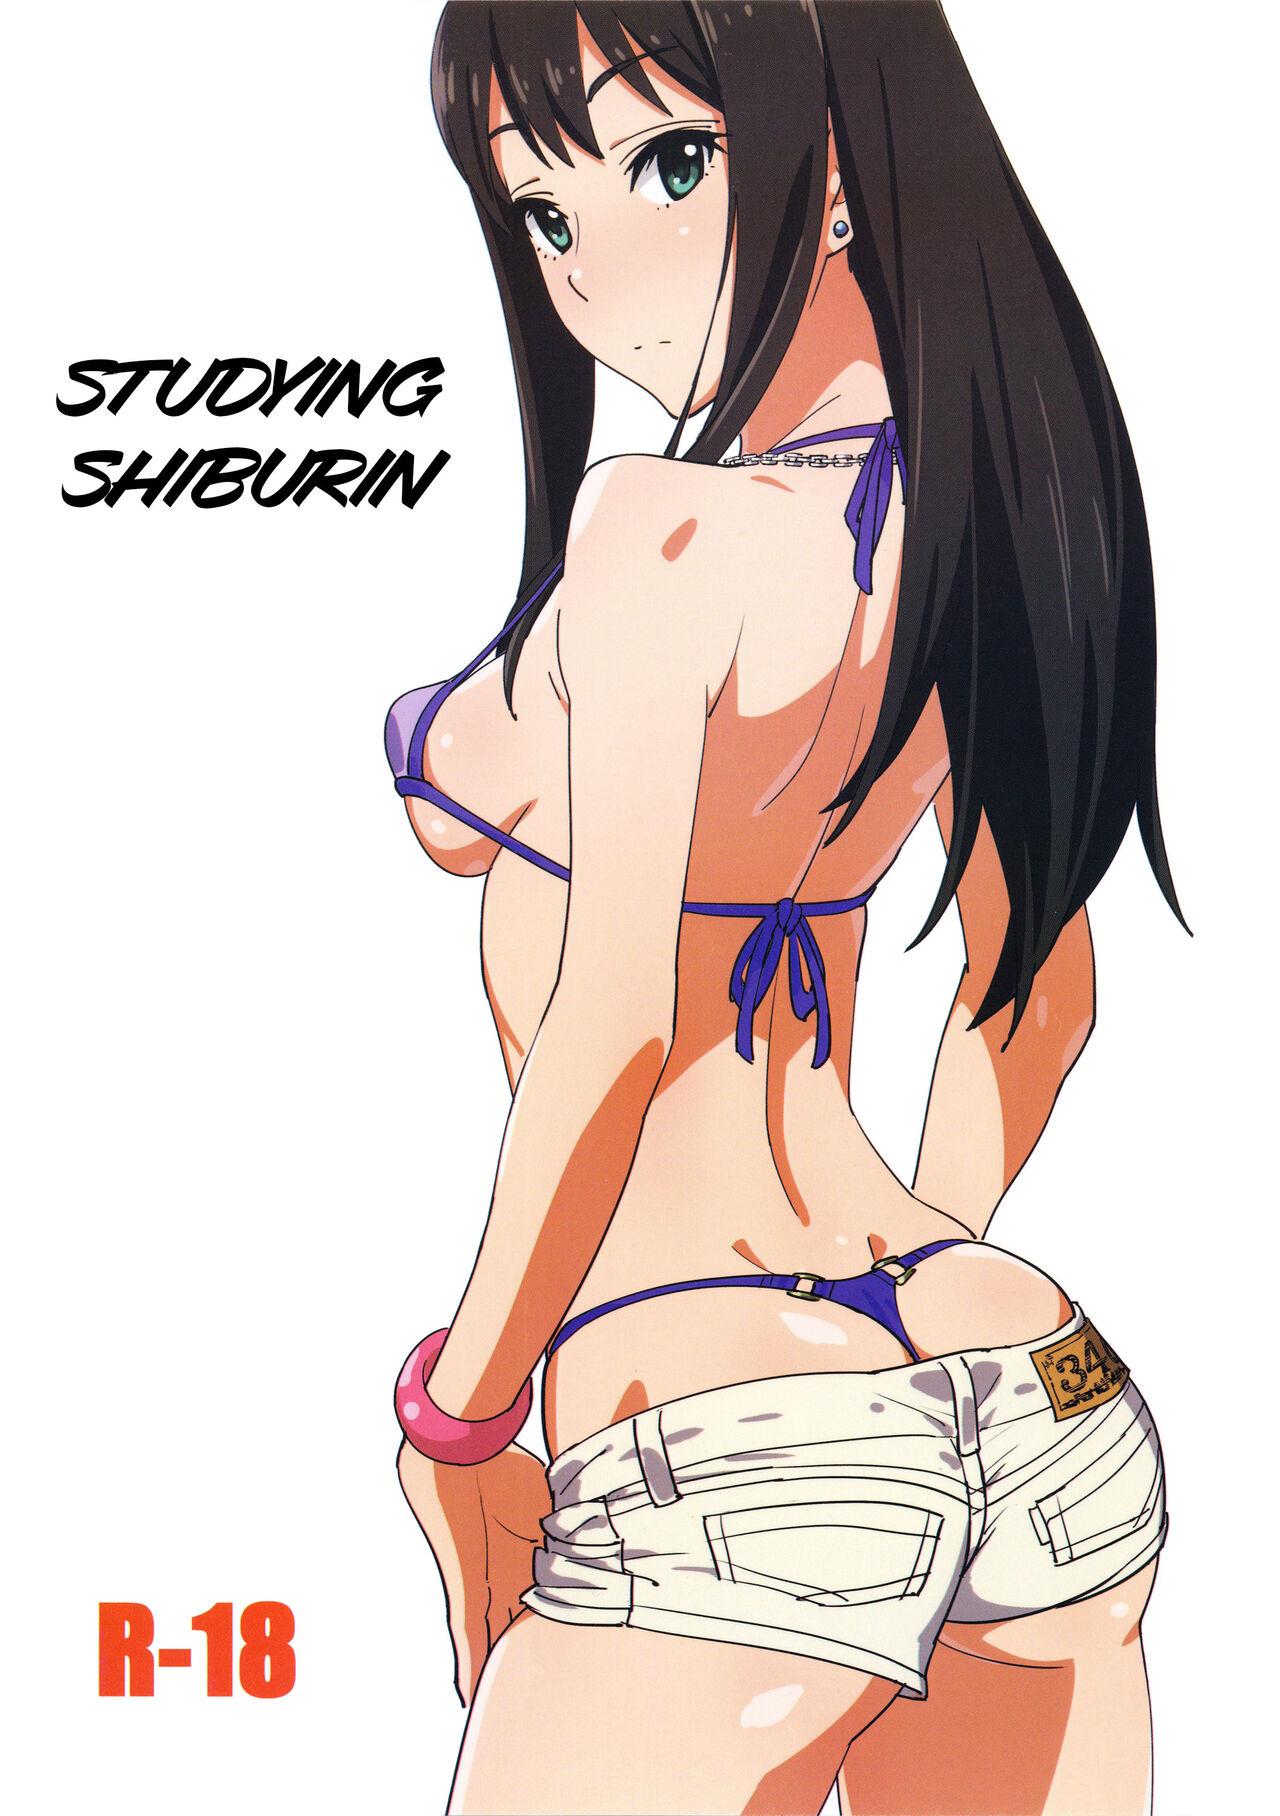 Shiburin Kenkyuu suru  | Studying Shiburin 0